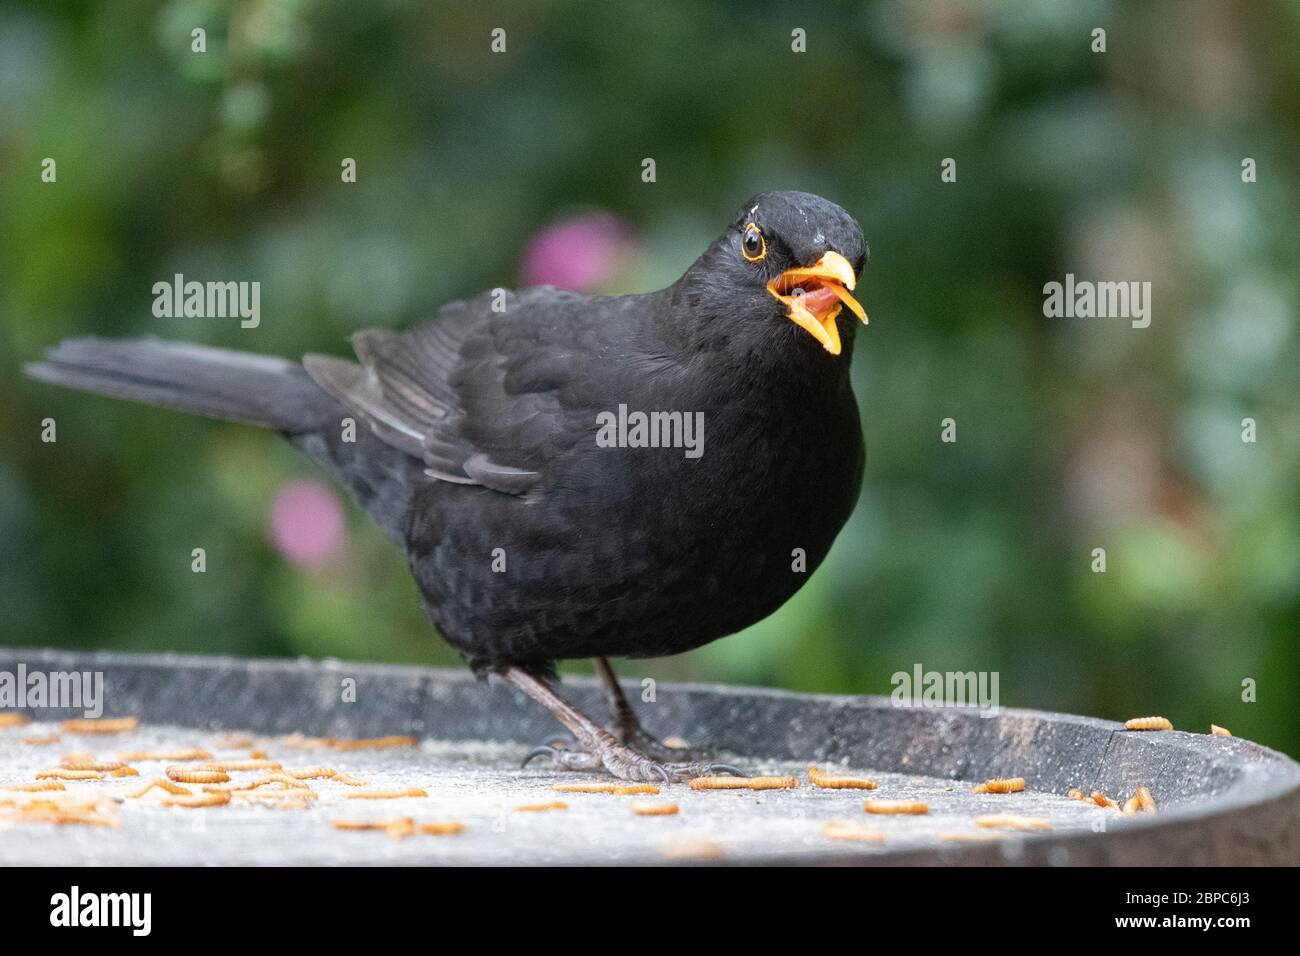 Langue de blackbird mâle visible tout en mangeant mealworms - Ecosse, Royaume-Uni Banque D'Images